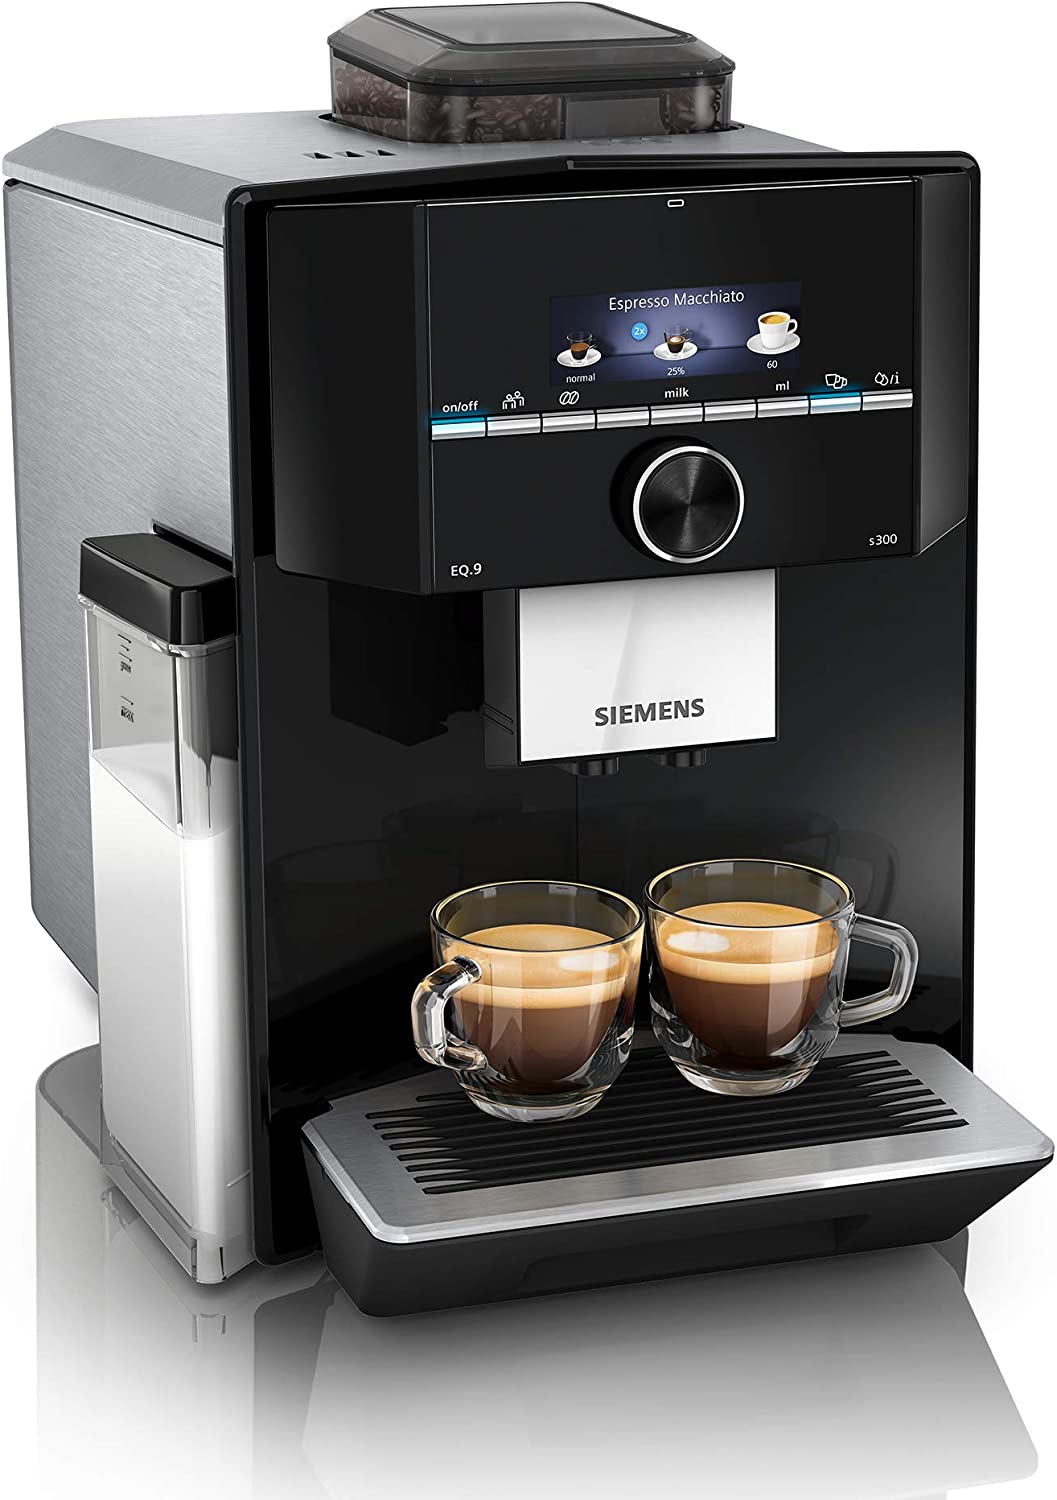 Siemens Kaffeevollautomat EQ.9 s300: Spitzenklasse?